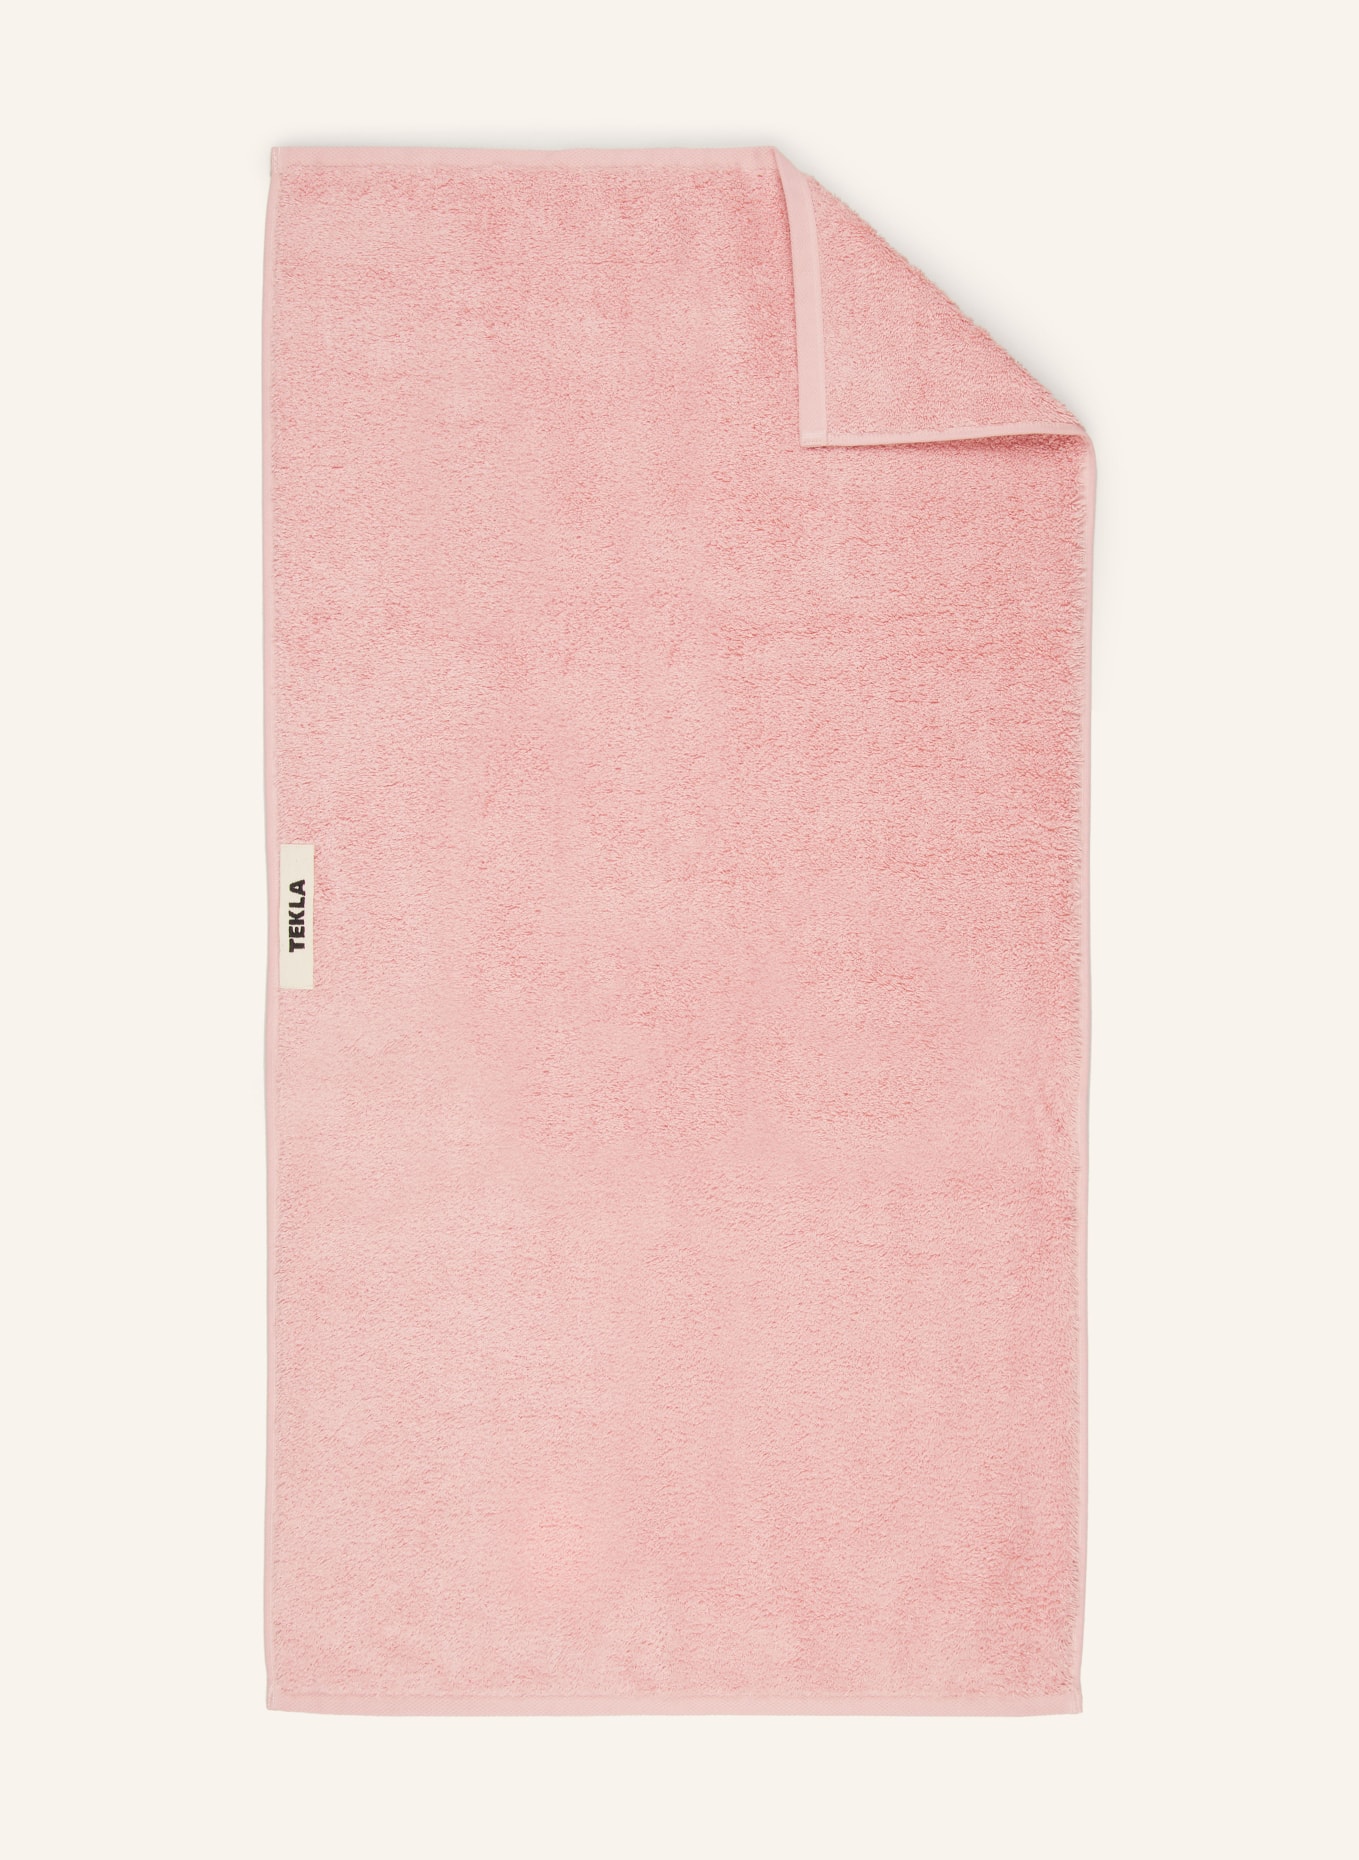 TEKLA Towel, Color: LIGHT PINK (Image 1)